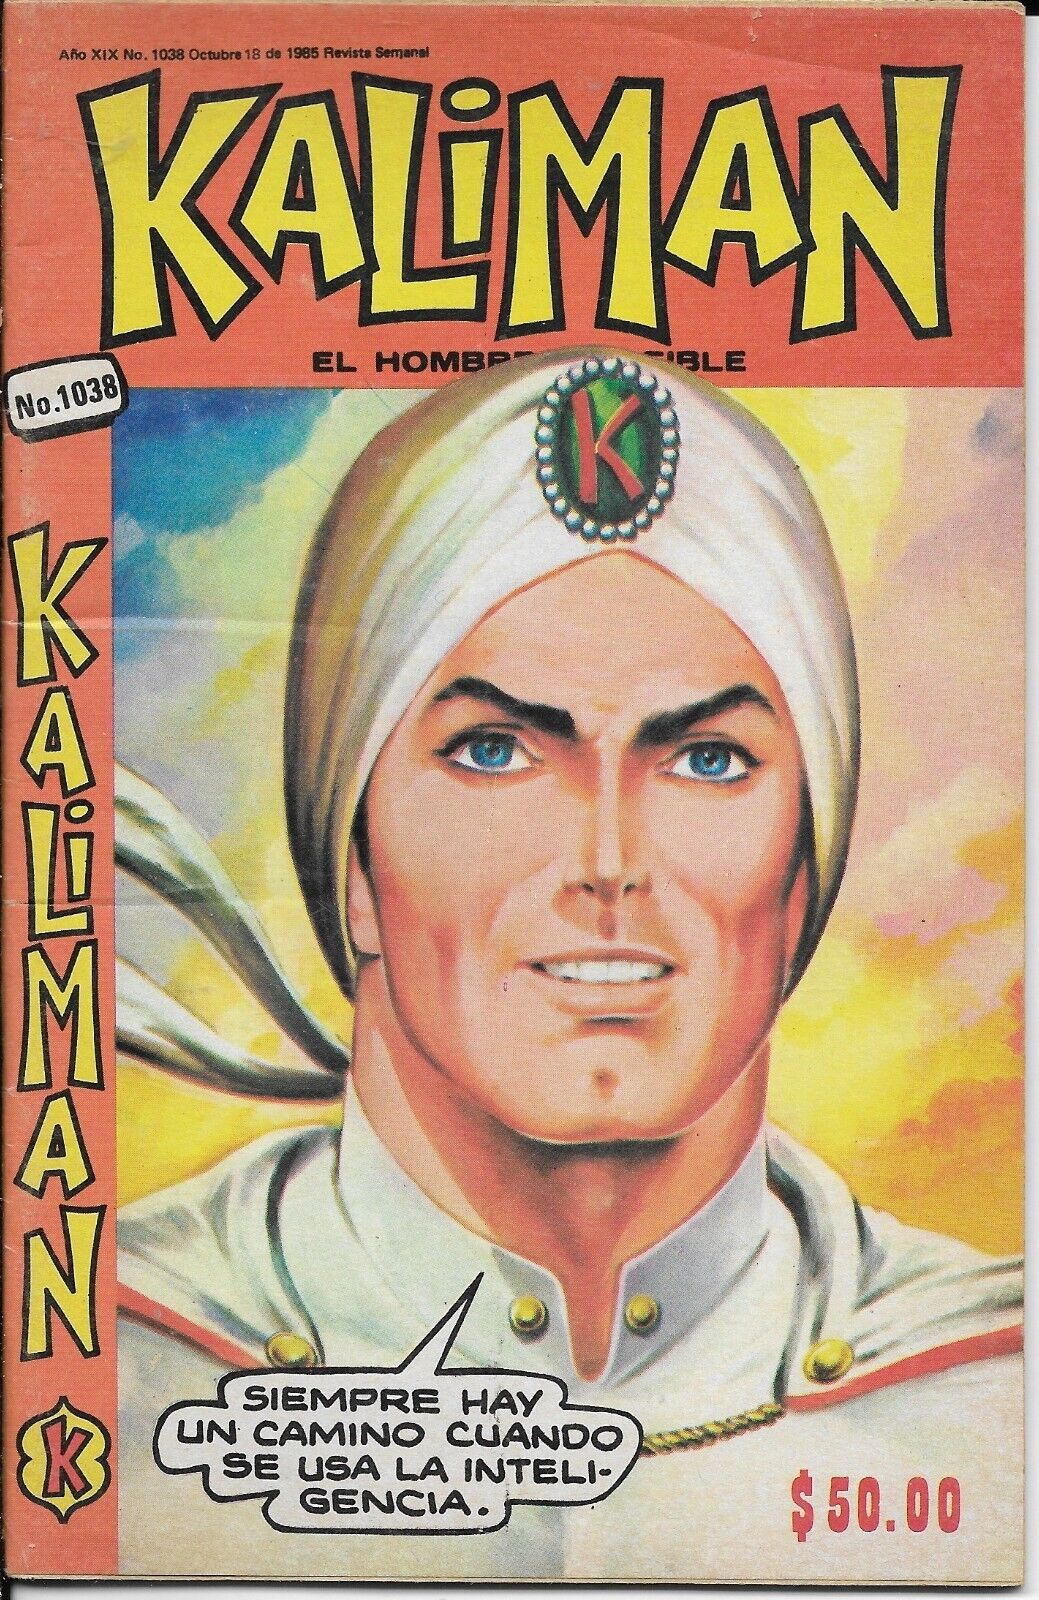 Kaliman El Hombre Increible #1038 - Octubre 18, 1985